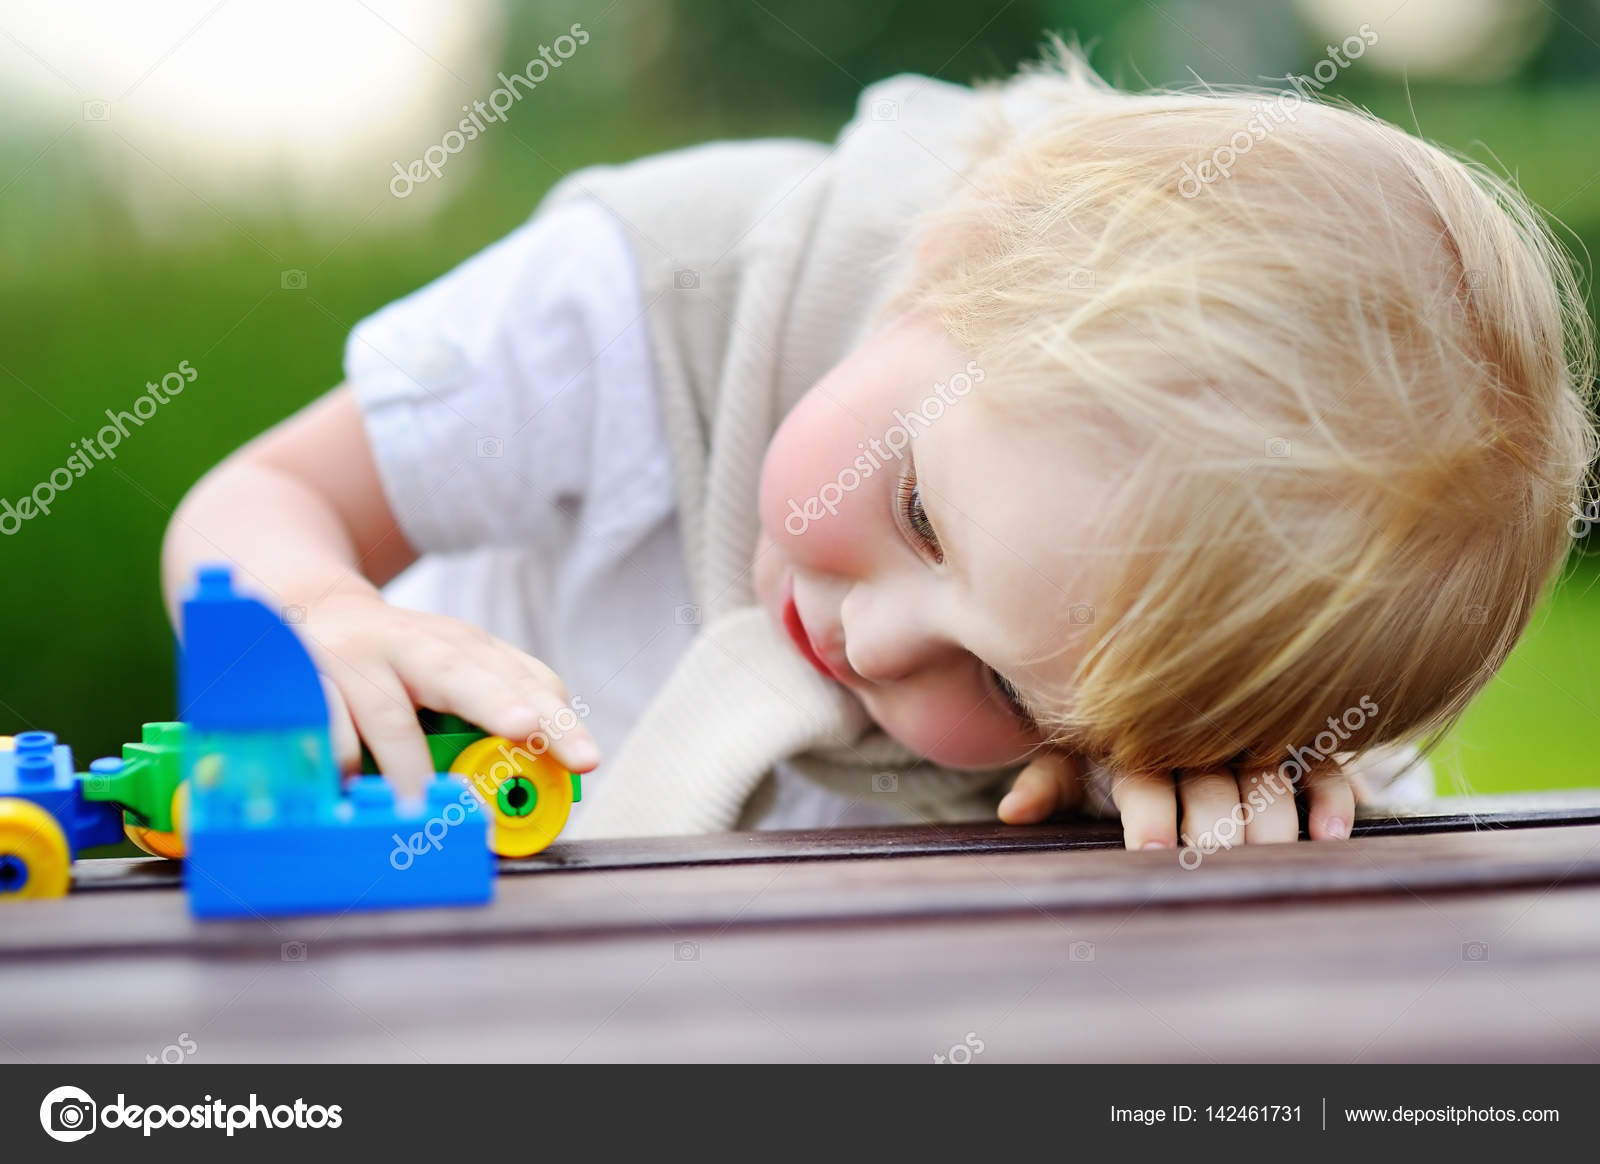 Peuter jongen spelen met speelgoed trein buitenshuis Stockfoto, rechtenvrije foto door © mary_smn #142461731